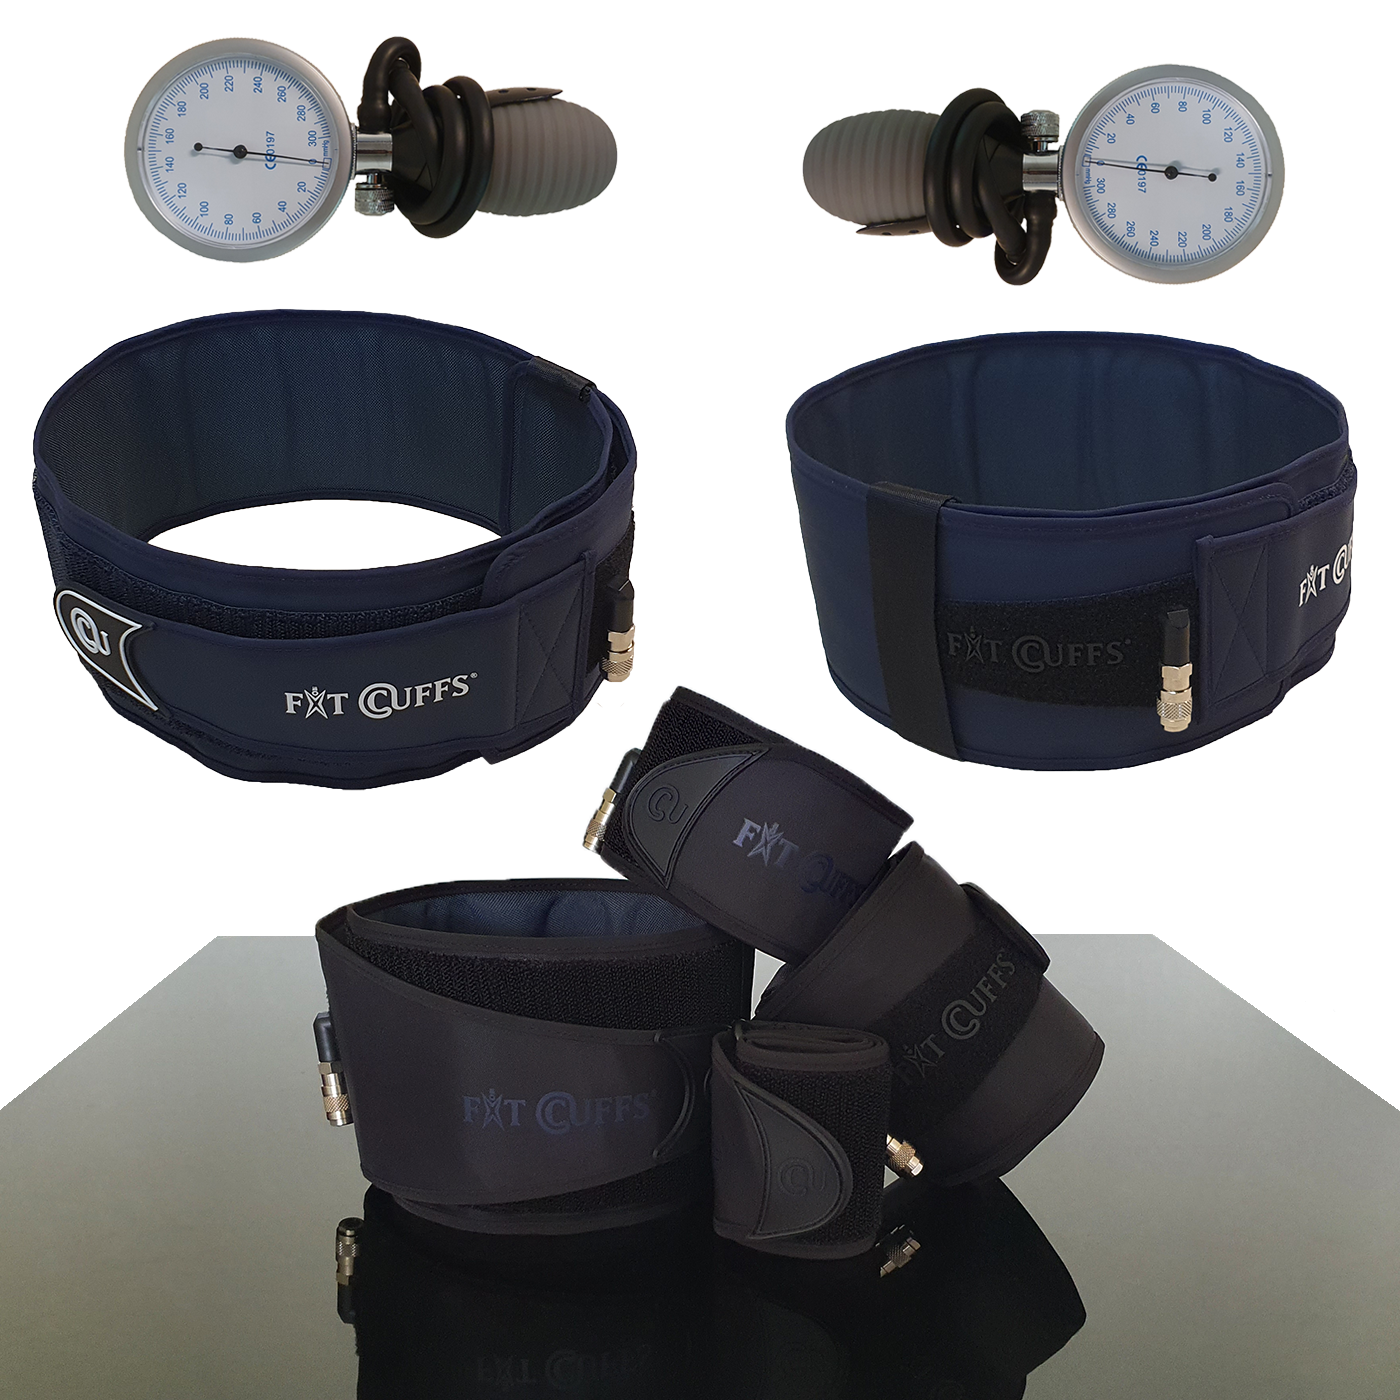 Billede af Fit Cuffs - Complete x 2 - Must Go - Black